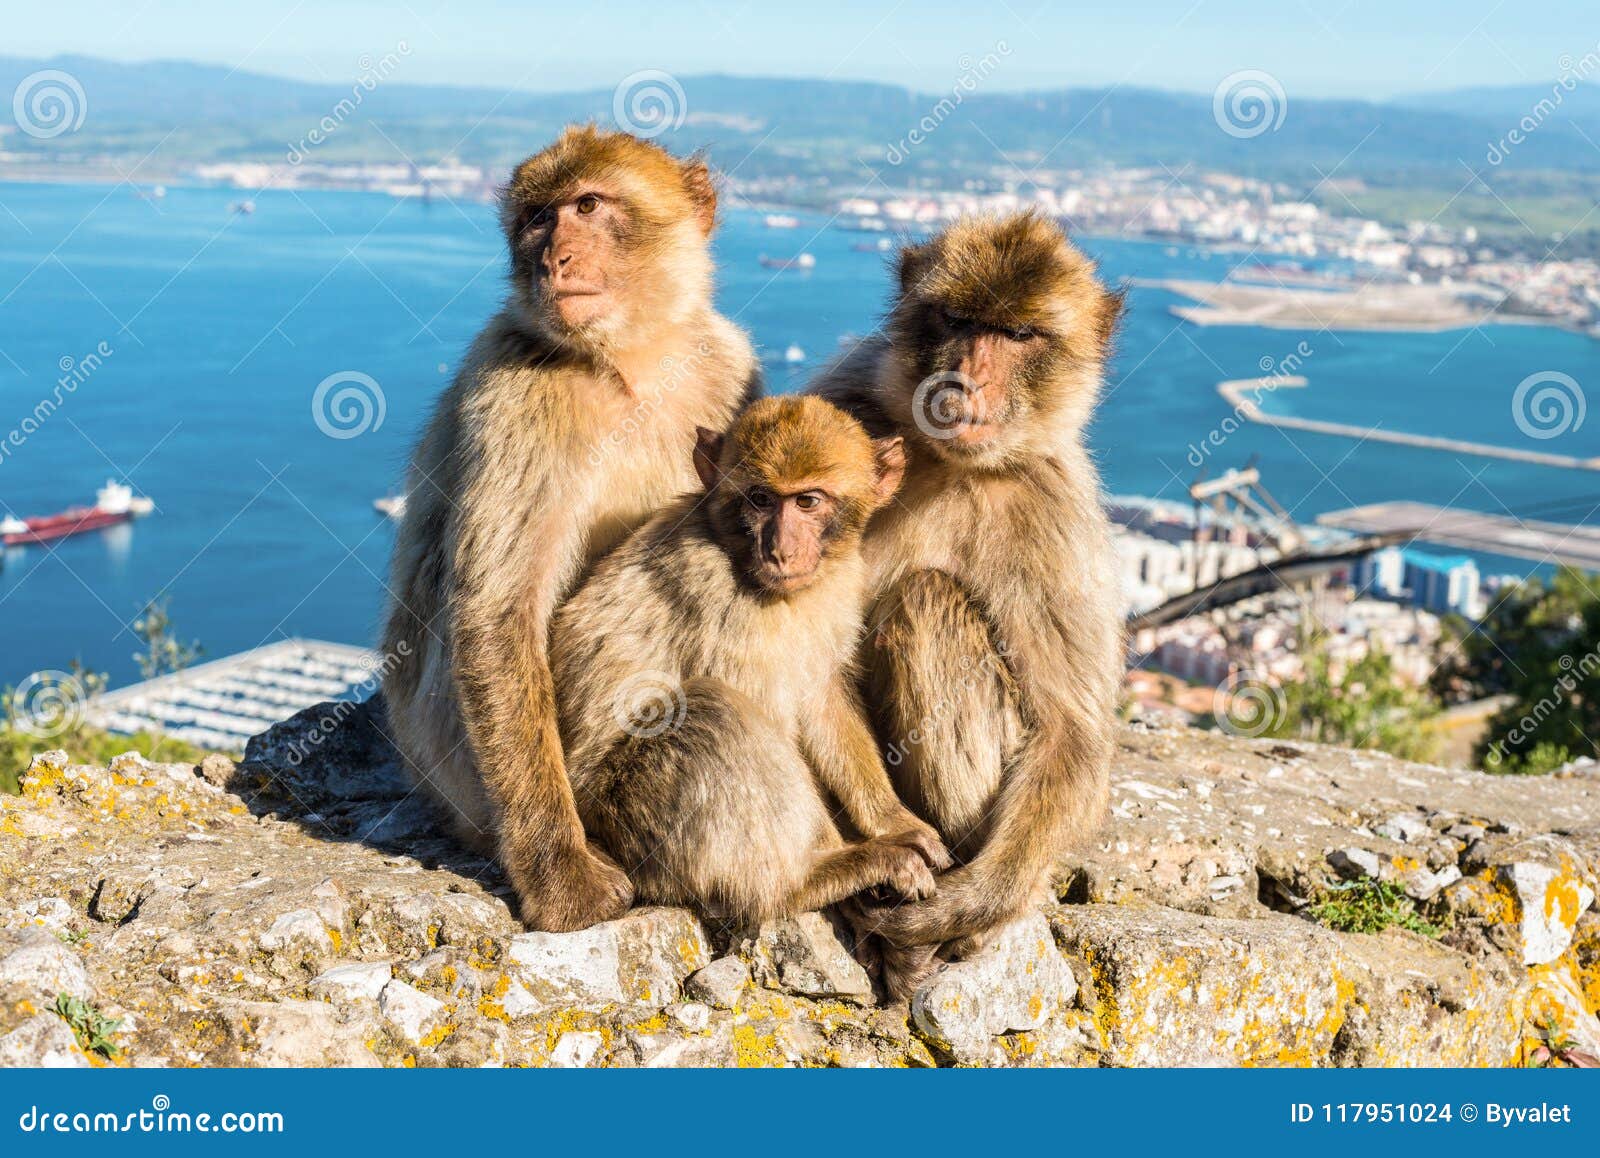 monkeys from gibraltar